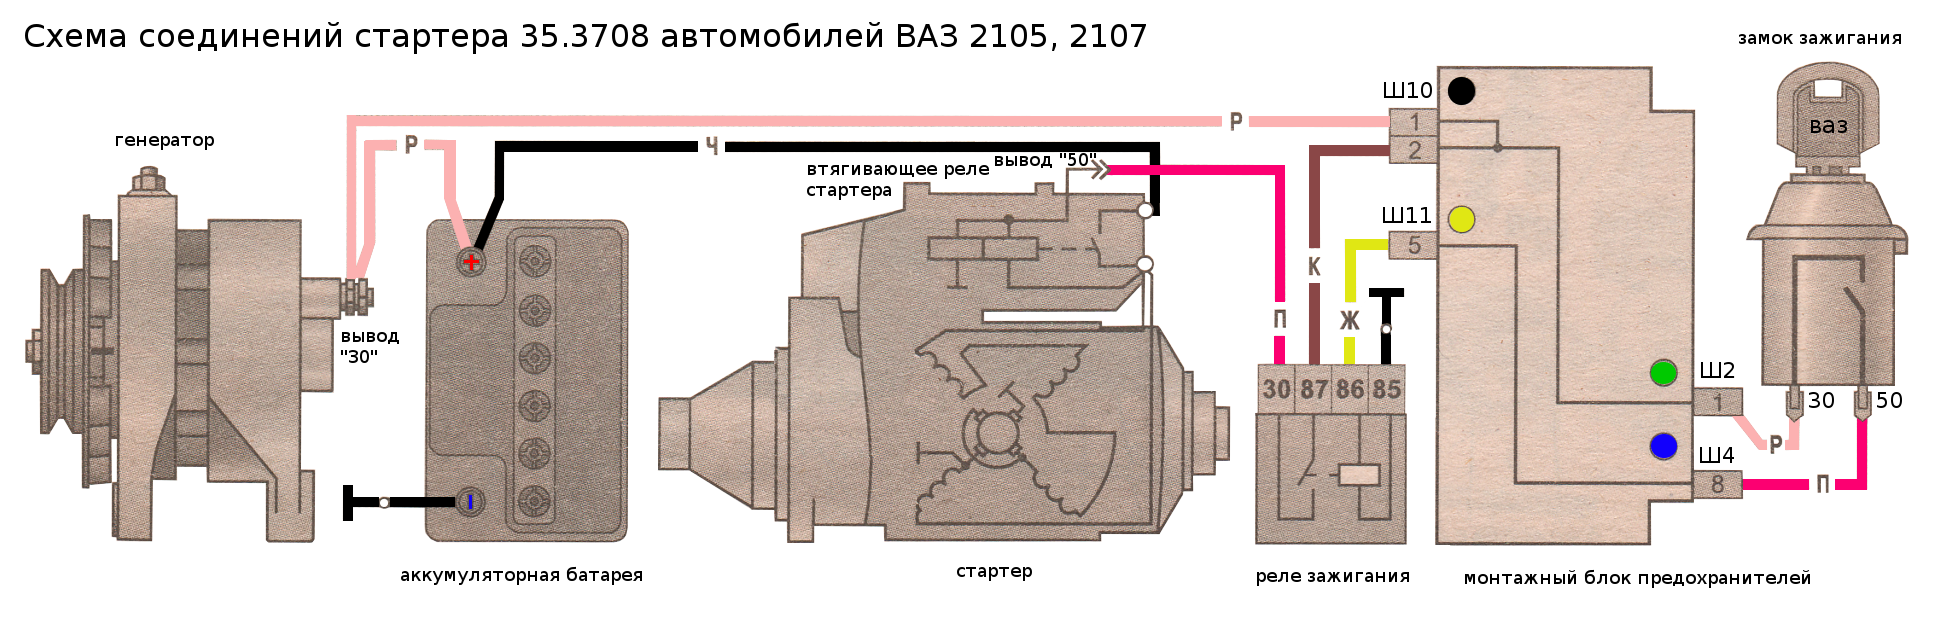 Схема подключения генератора ваз-2105 и описание